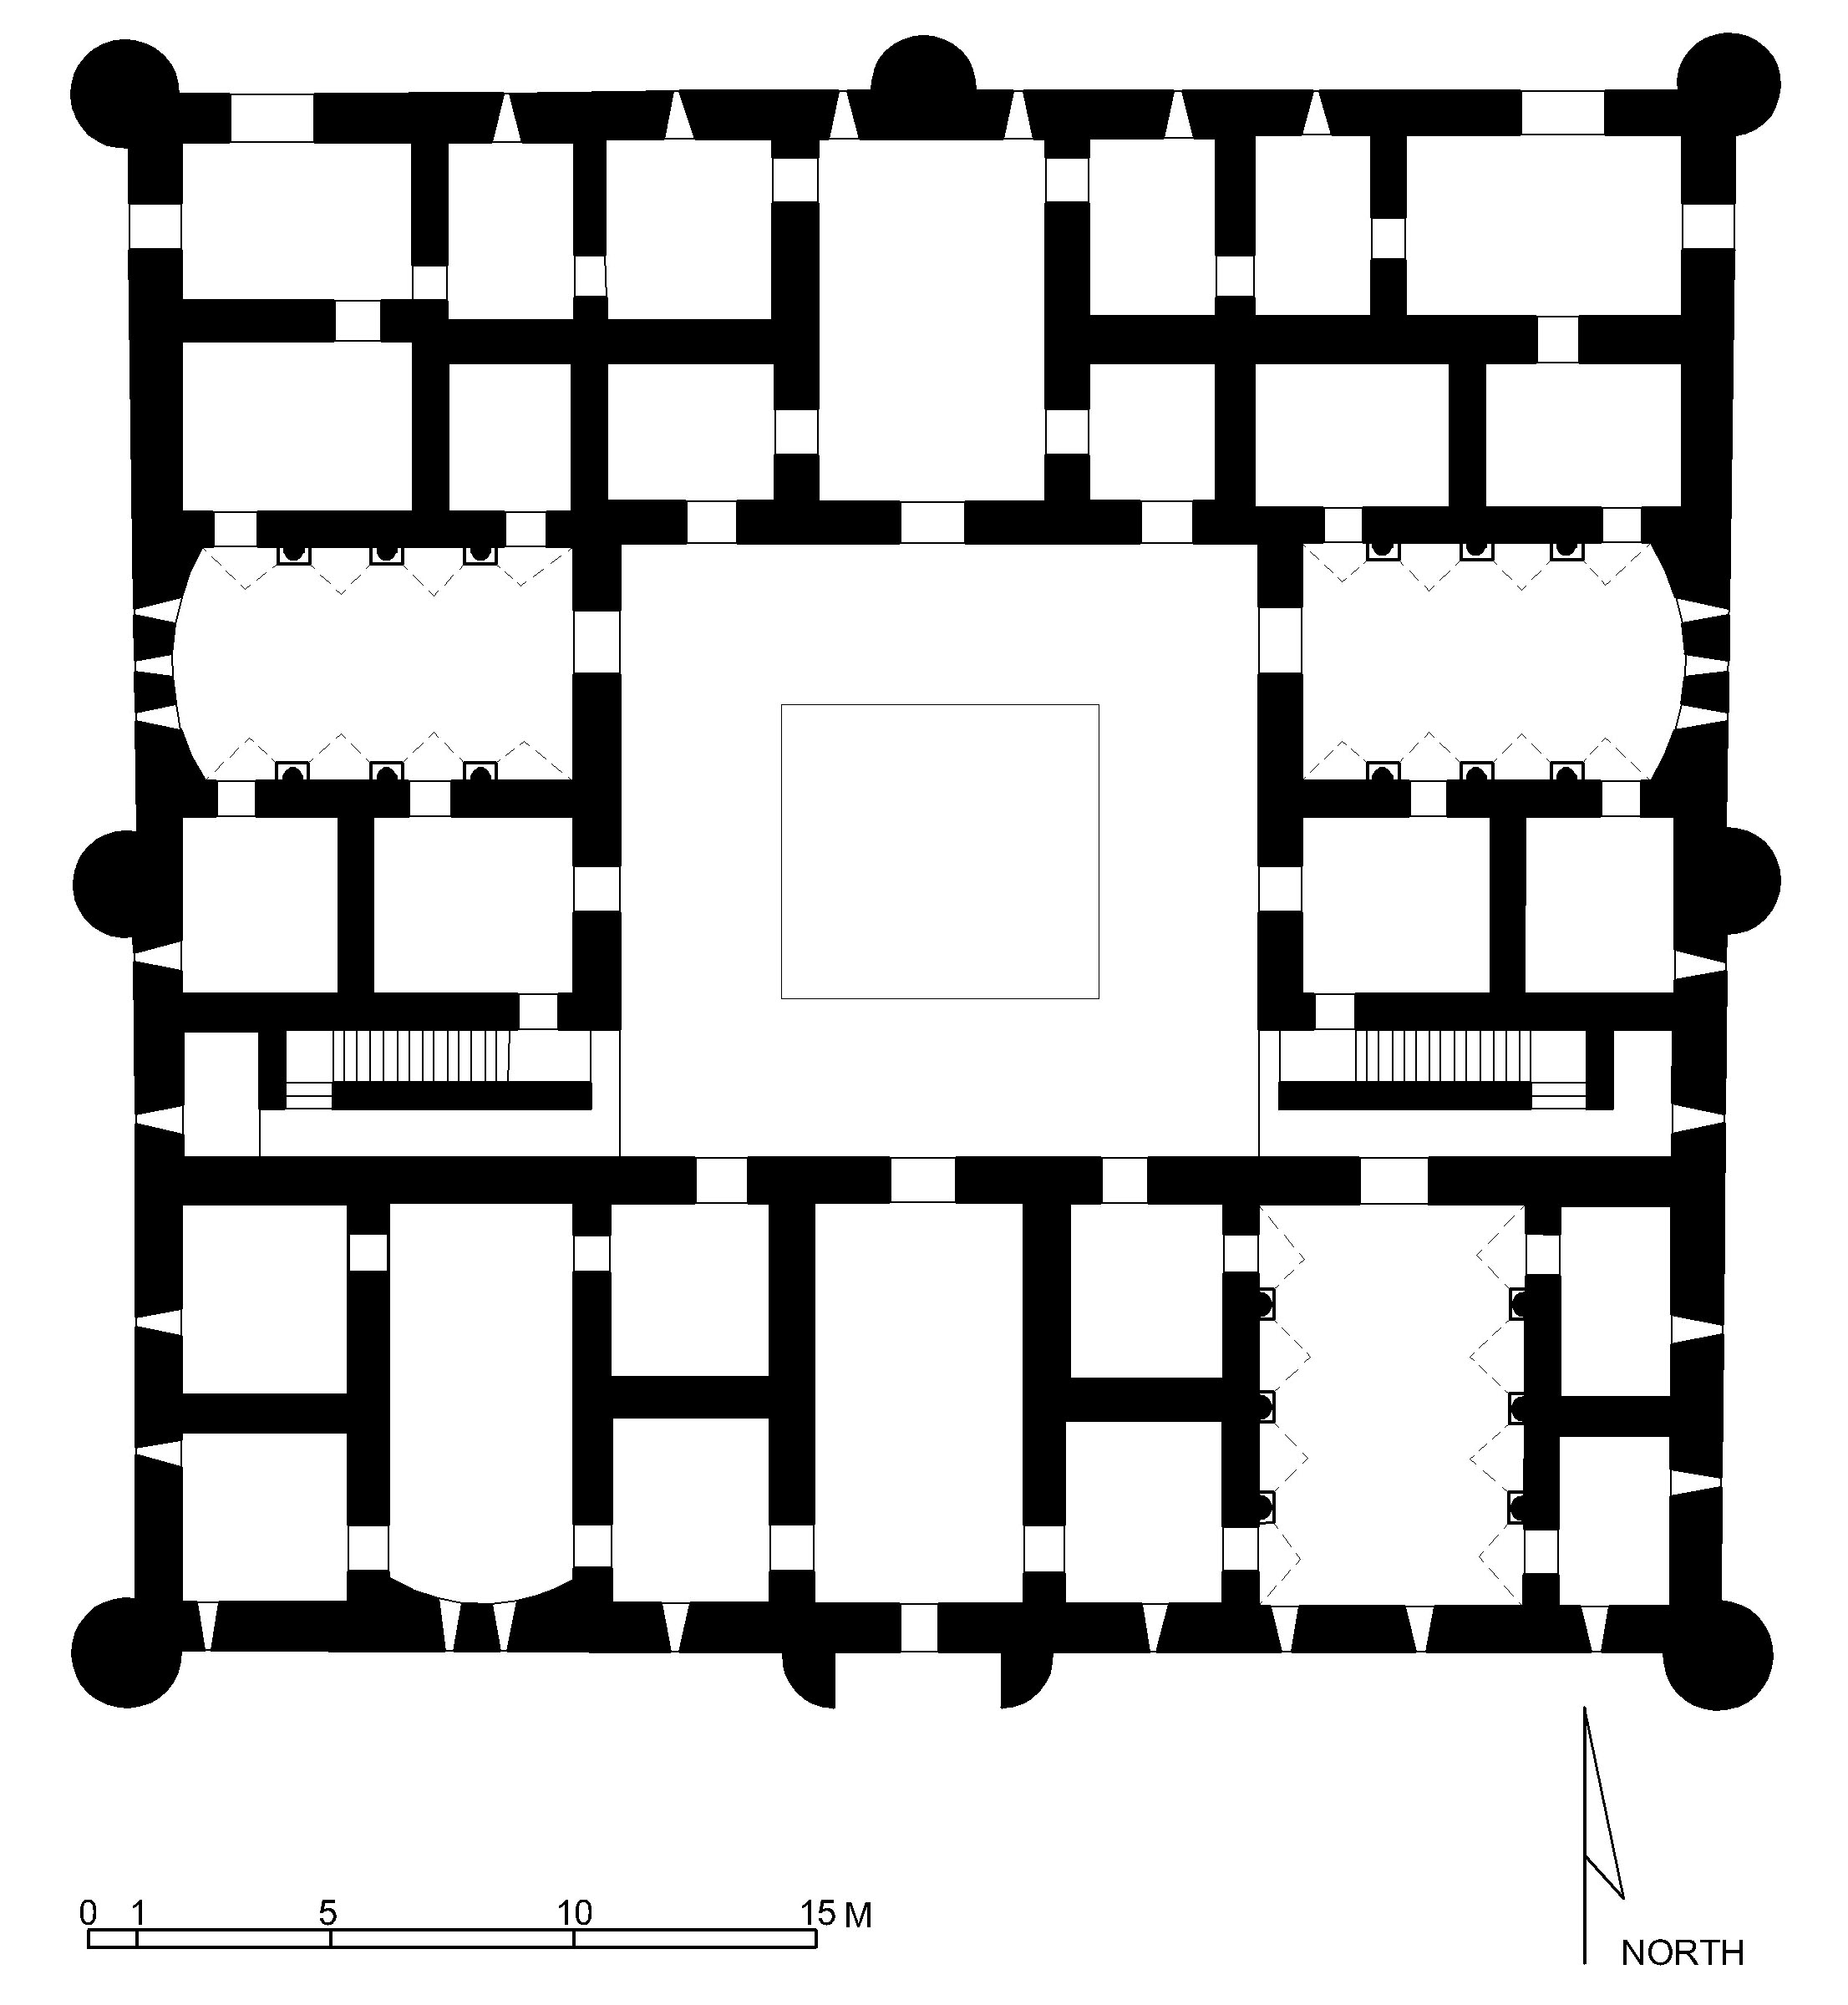 Reconstituted plan of the upper floor